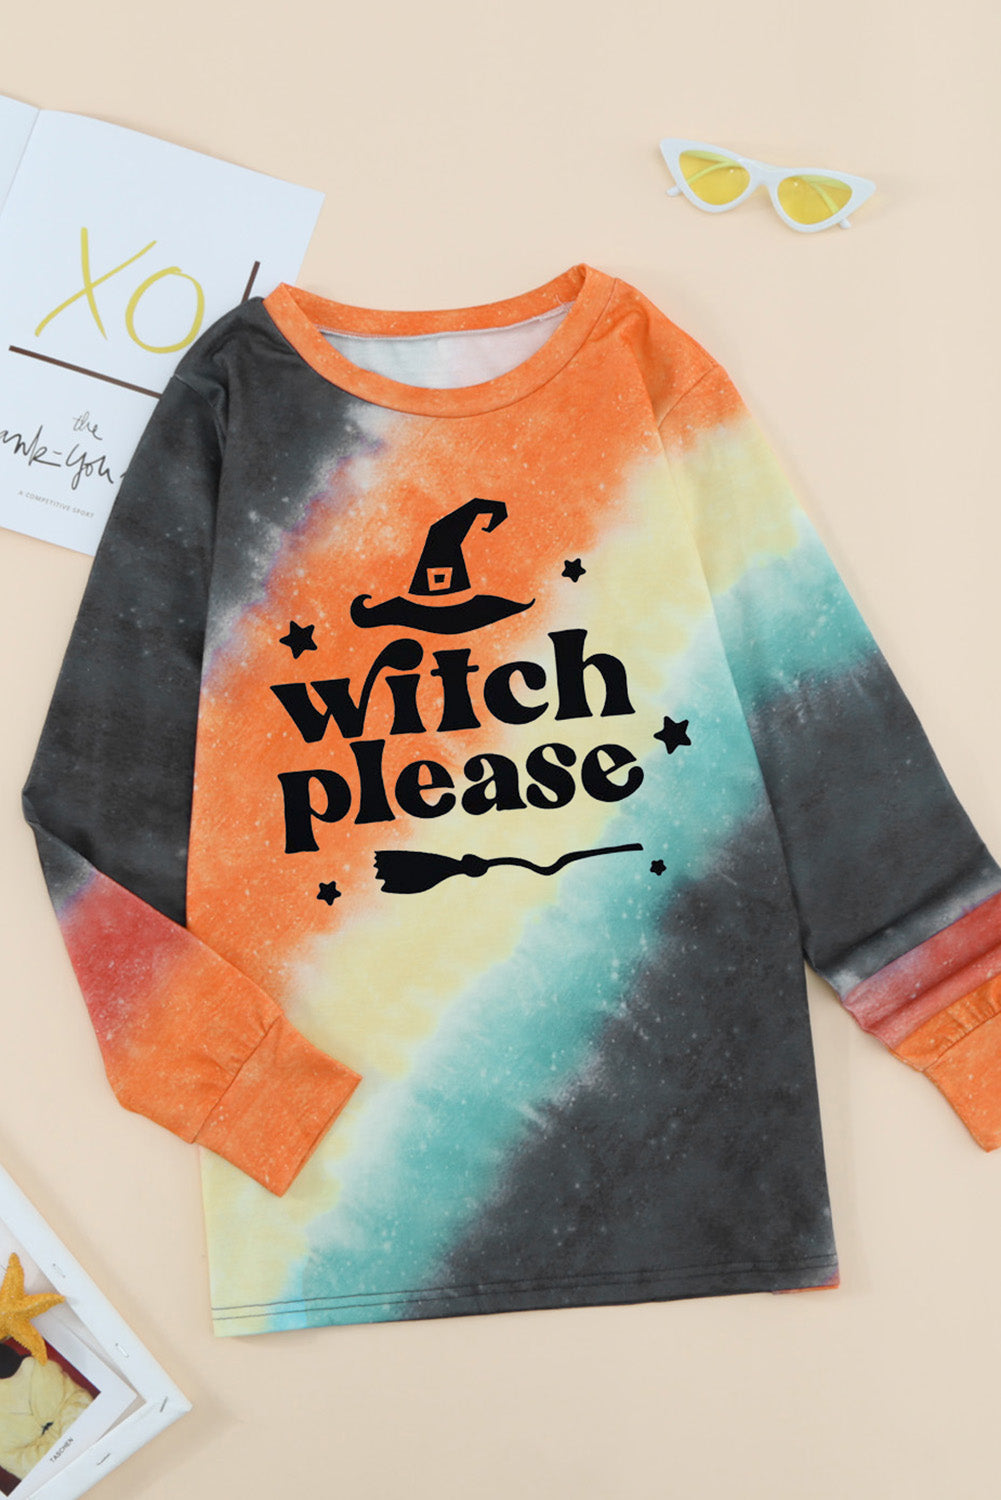 Orange Witch Please Tie Dye Graphic Print Pullover Sweatshirt Graphic Sweatshirts JT's Designer Fashion